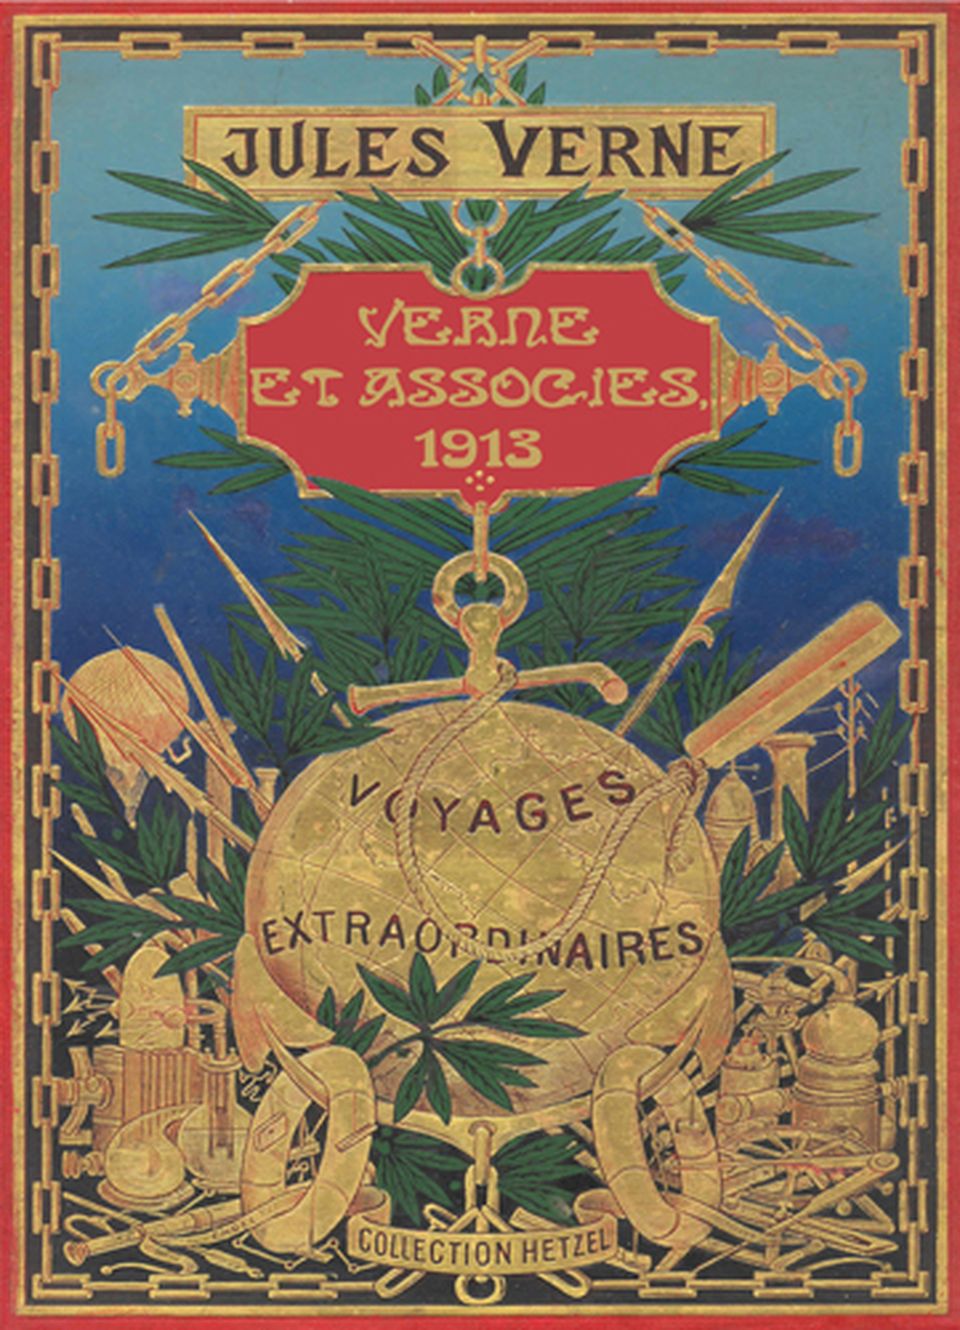 Jules Verne, Verne et Associés 1913 image